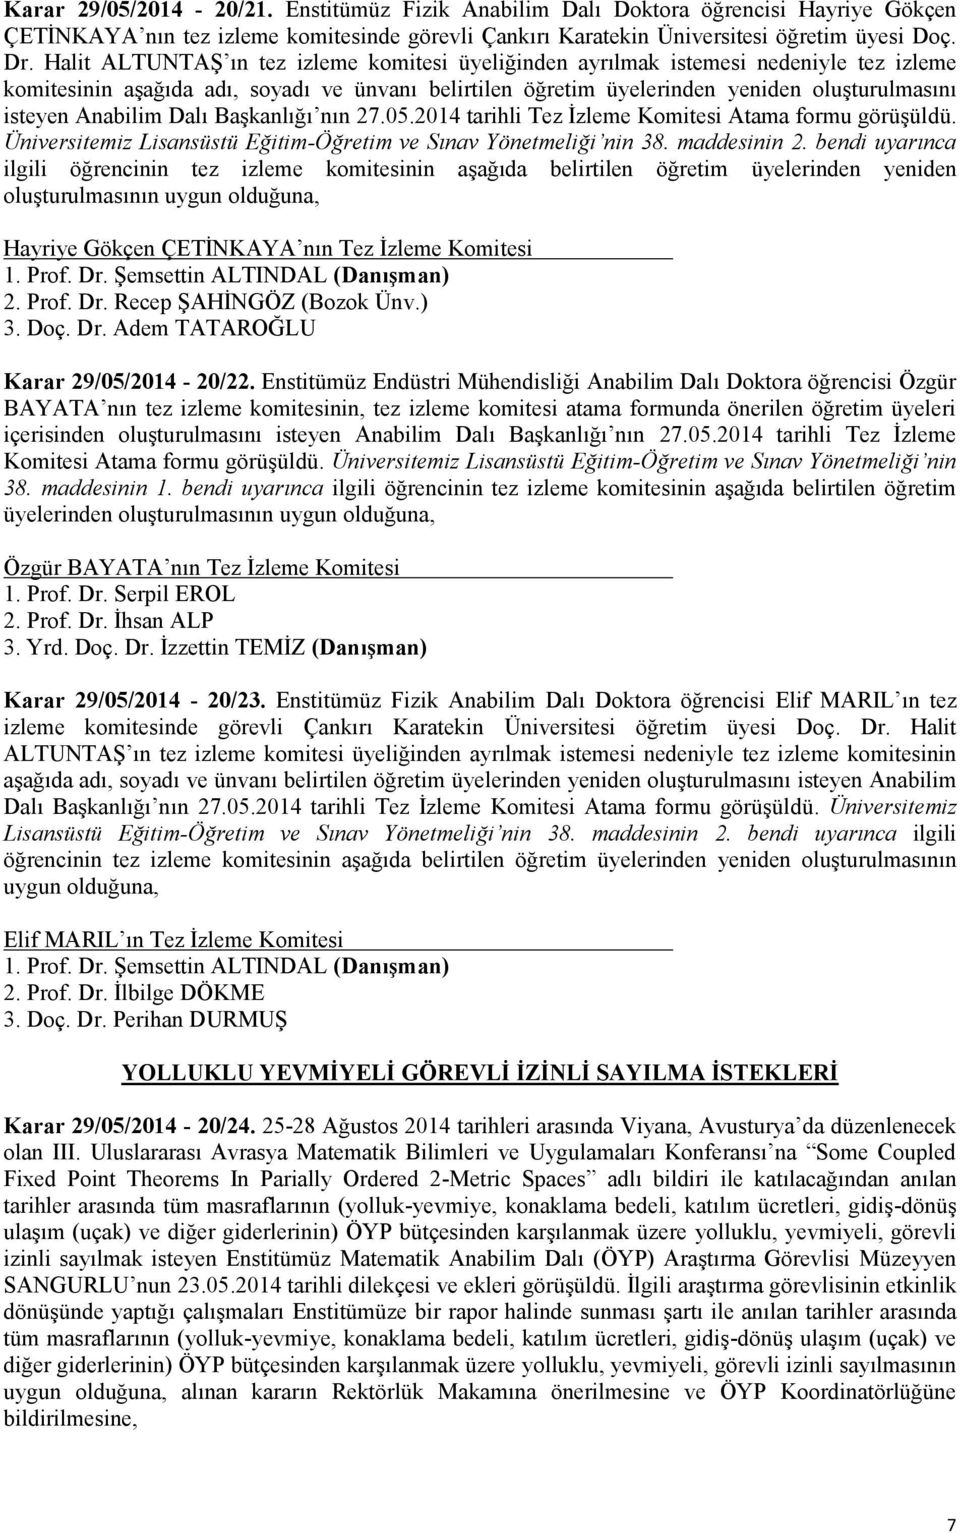 Anabilim Dalı Başkanlığı nın 27.05.2014 tarihli Tez İzleme Komitesi Atama formu görüşüldü. Üniversitemiz Lisansüstü Eğitim-Öğretim ve Sınav Yönetmeliği nin 38. maddesinin 2.